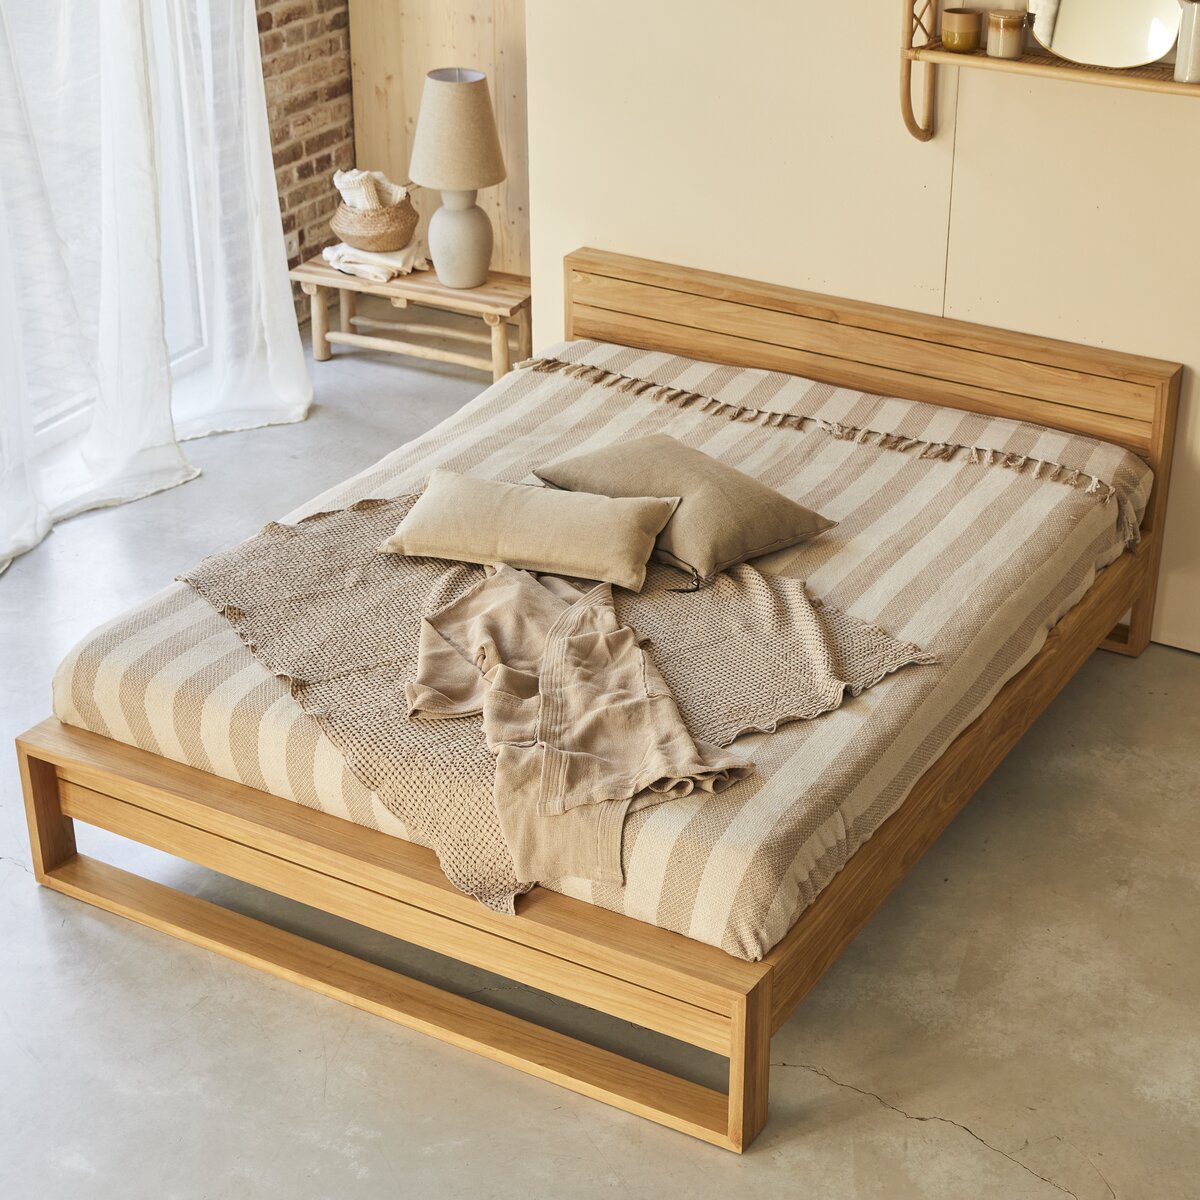 double bed 160 x 200 cm - Bedroom furniture - Tikamoon